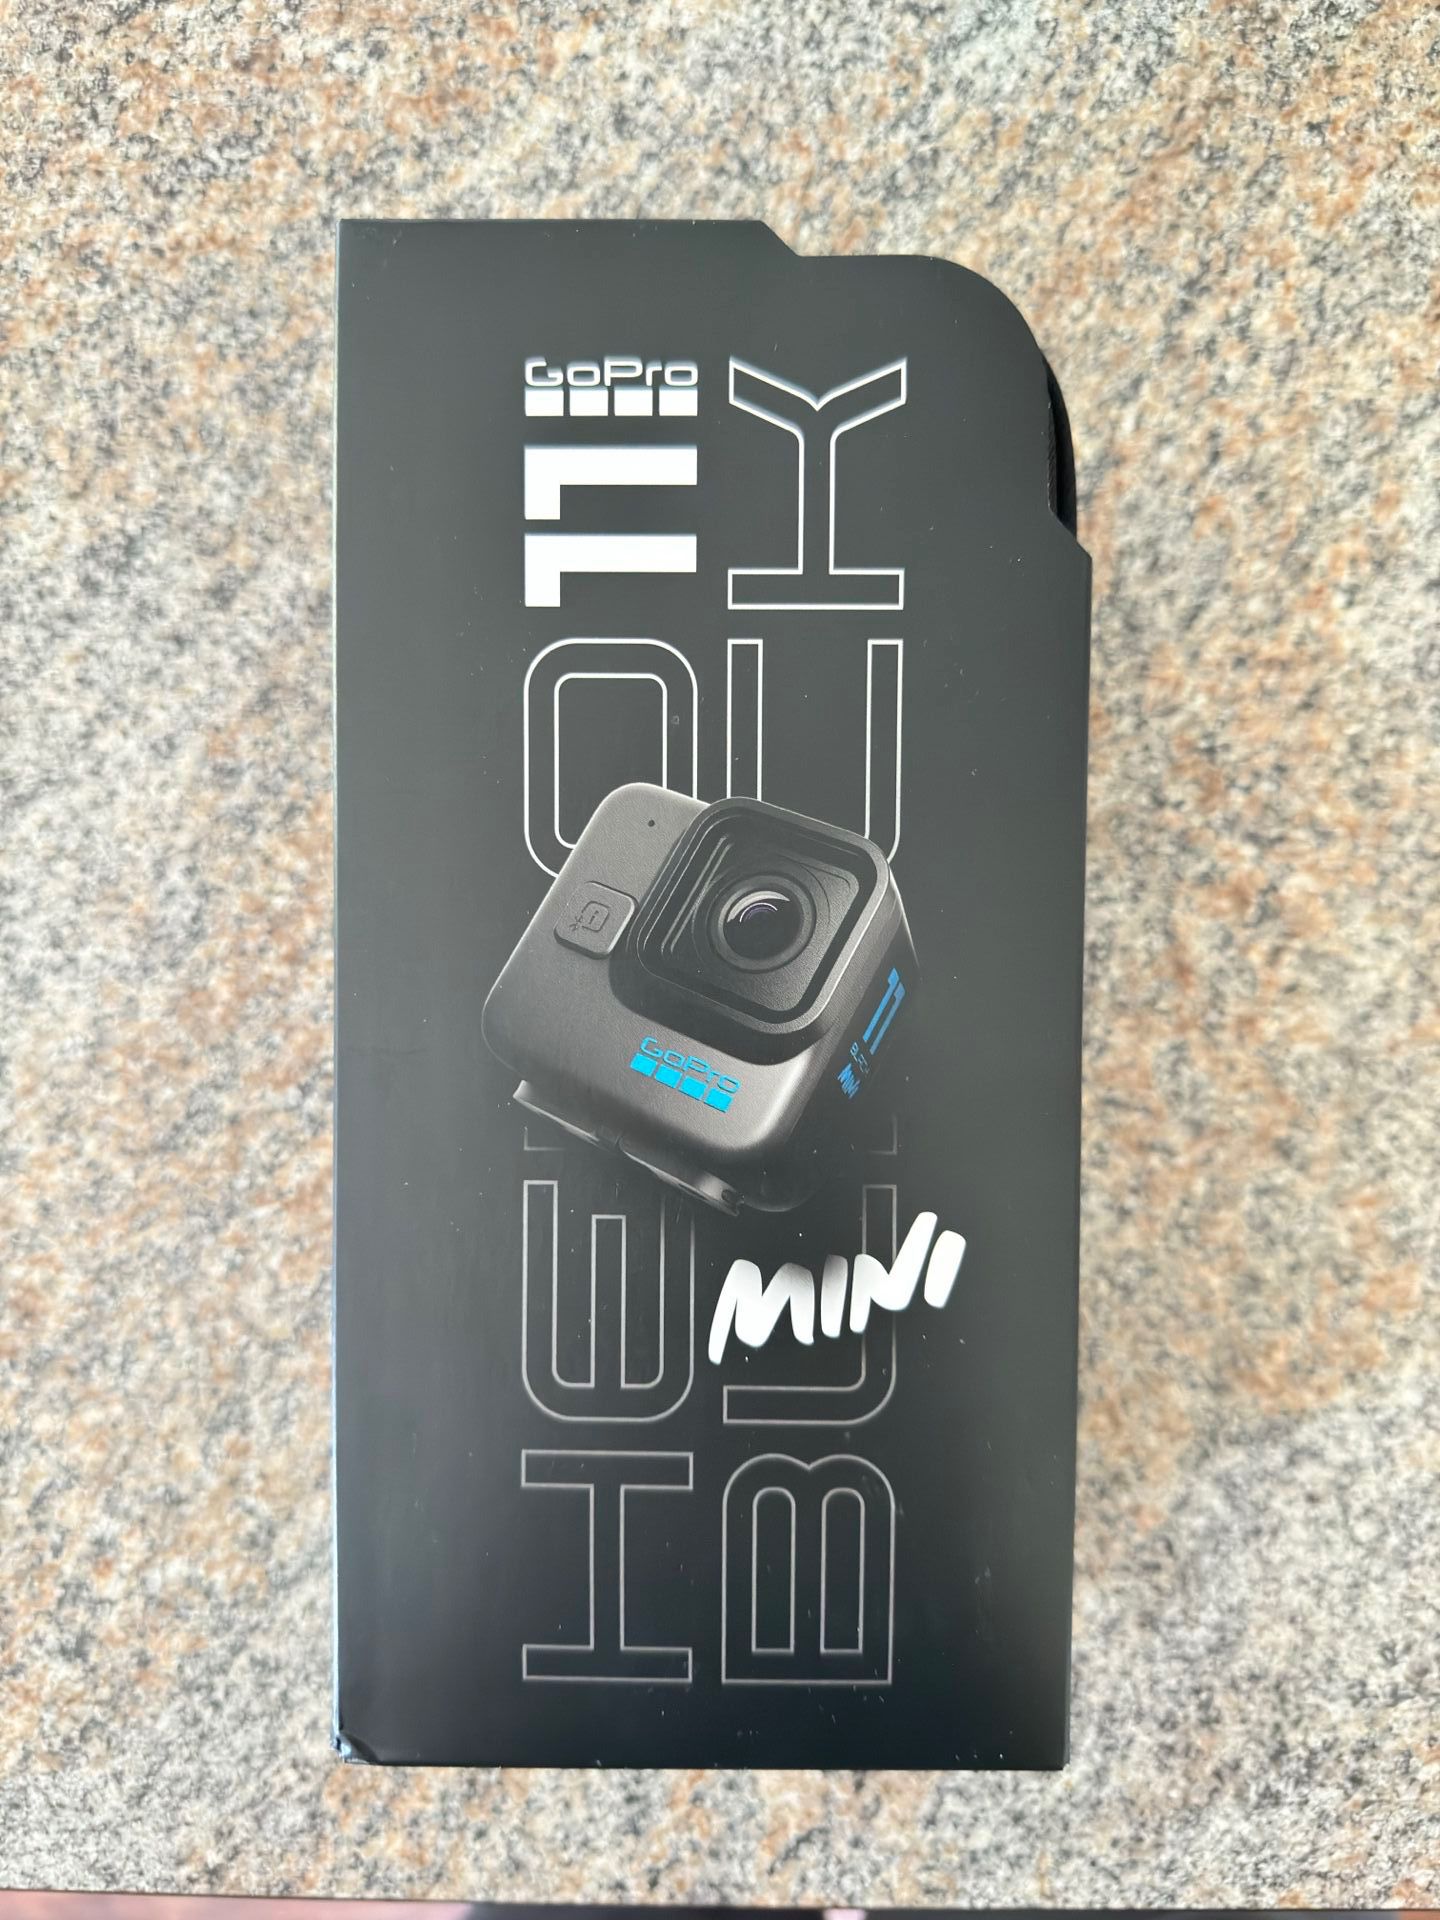 GoPro - HERO11 Black Mini - Black